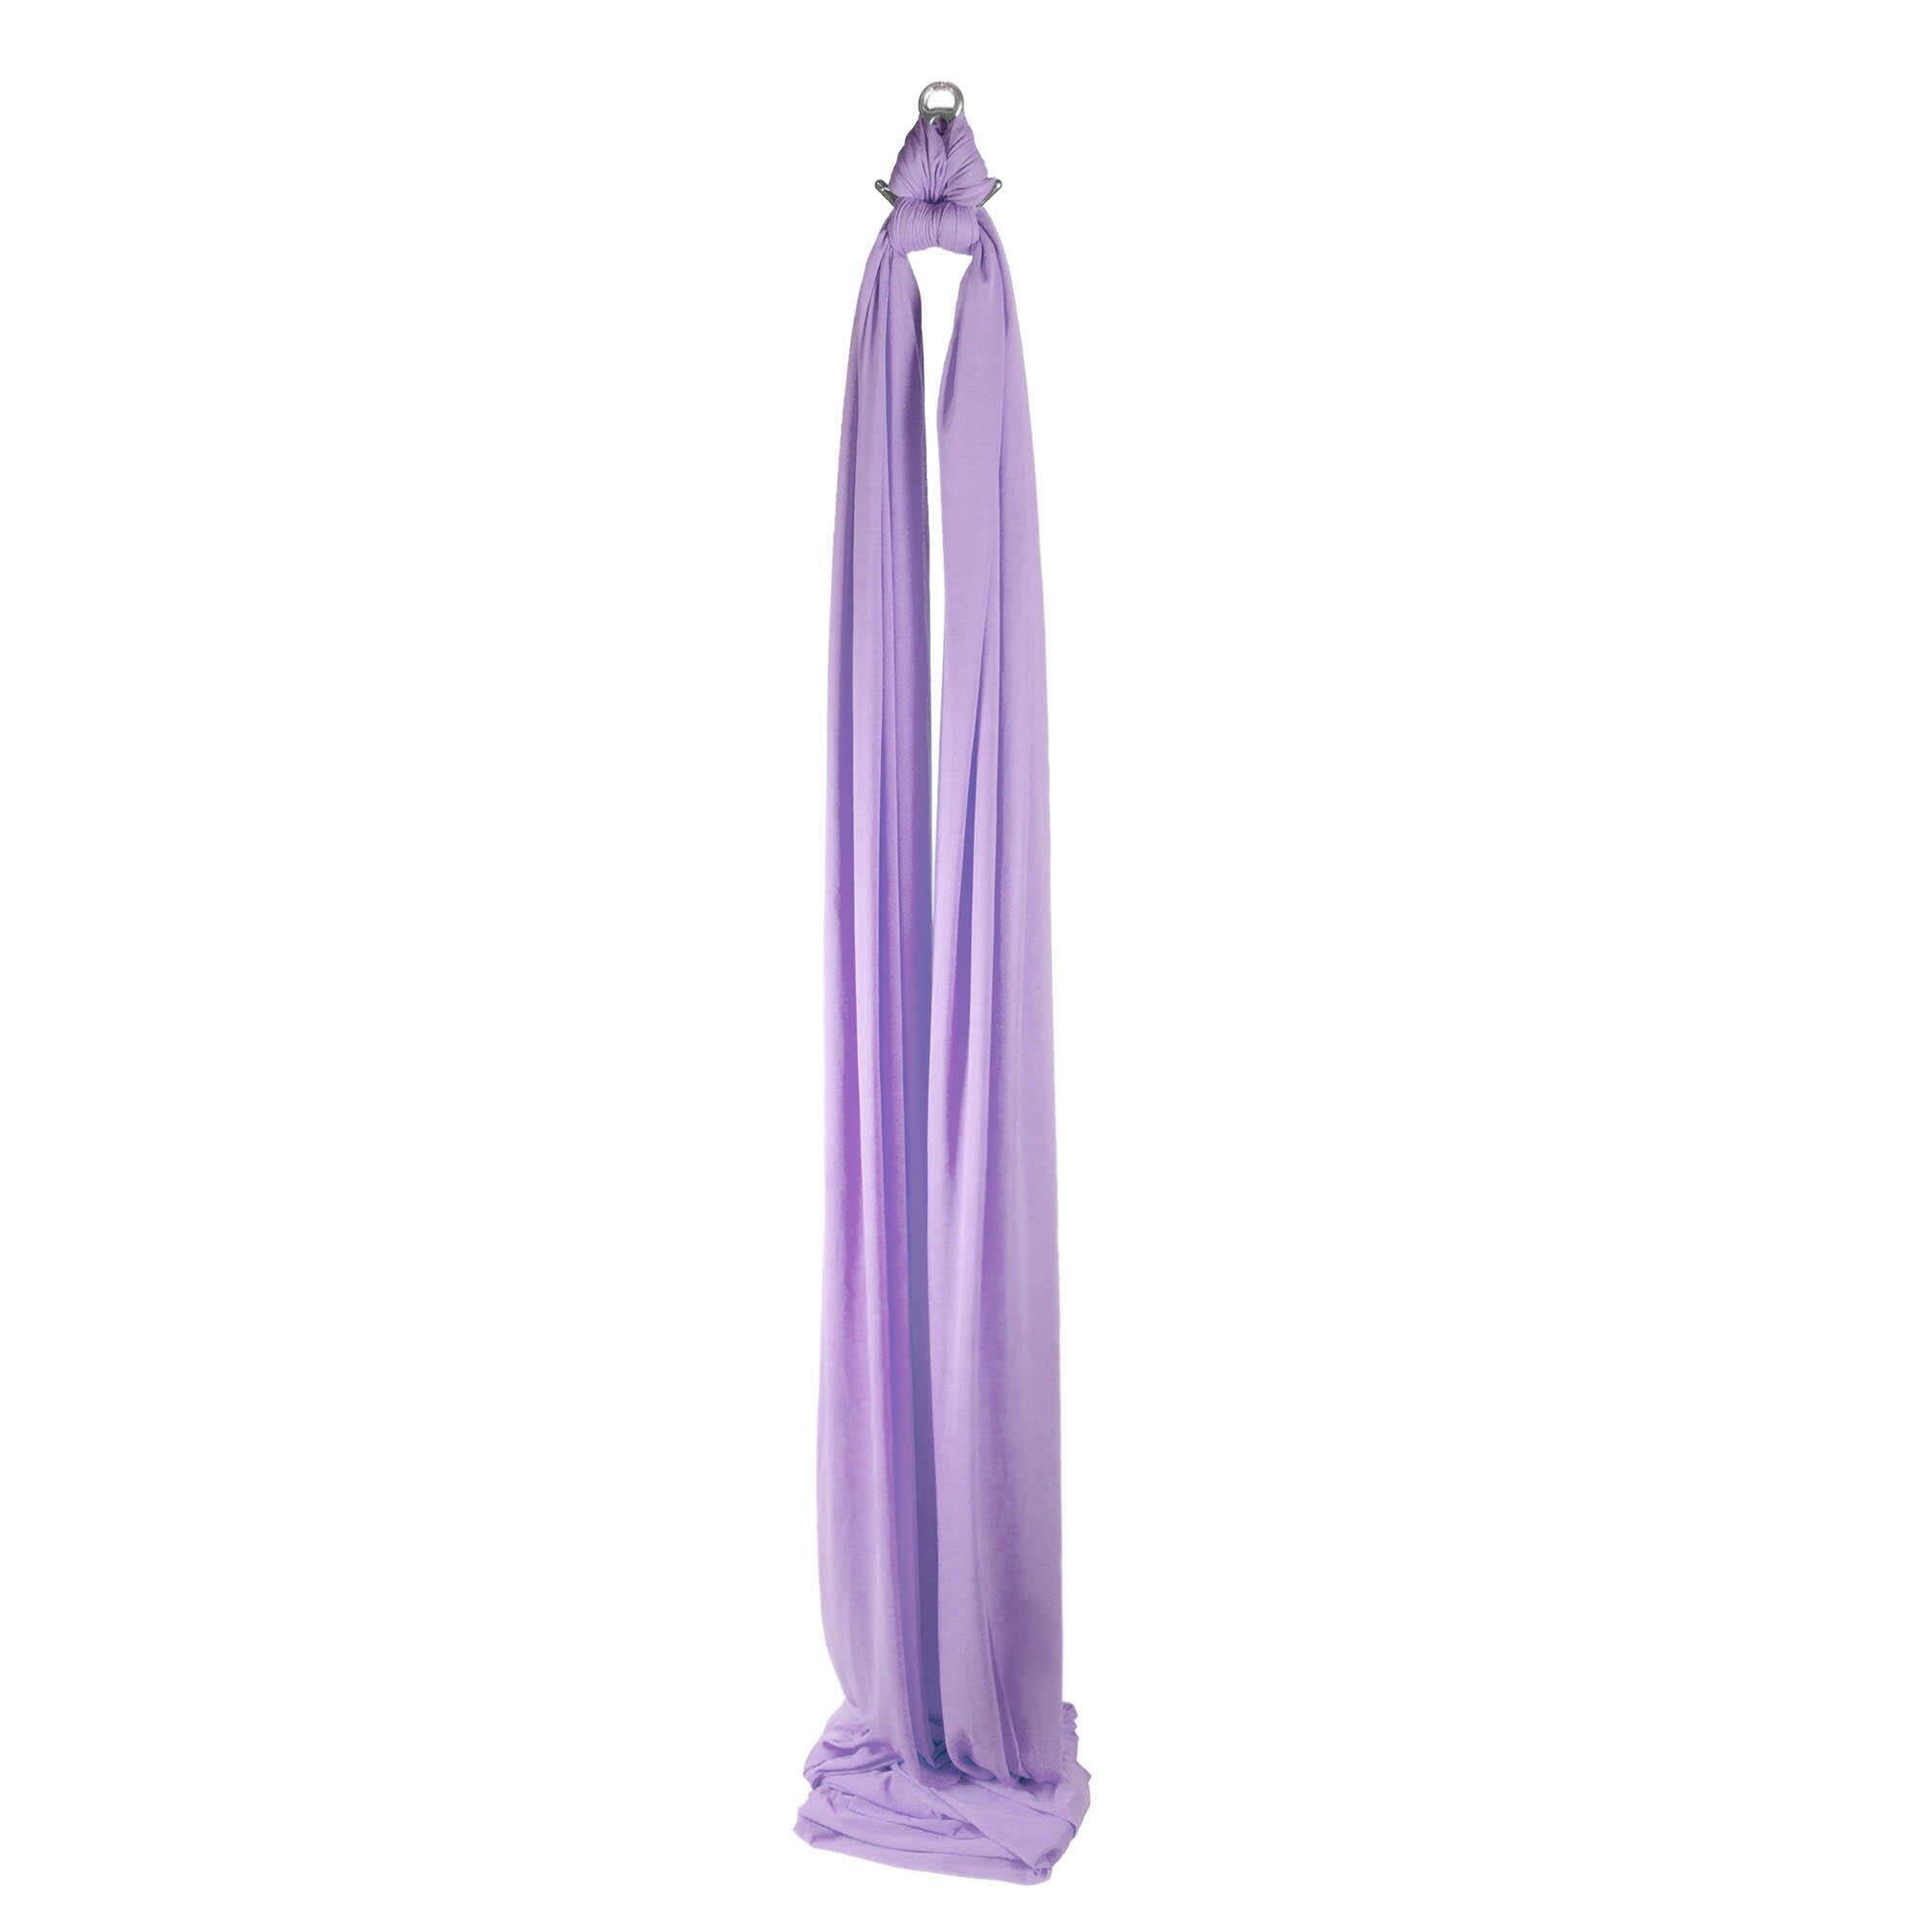 Firetoys Aerial Silk (Aerial Fabric / Tissus) - Lavender 1/5